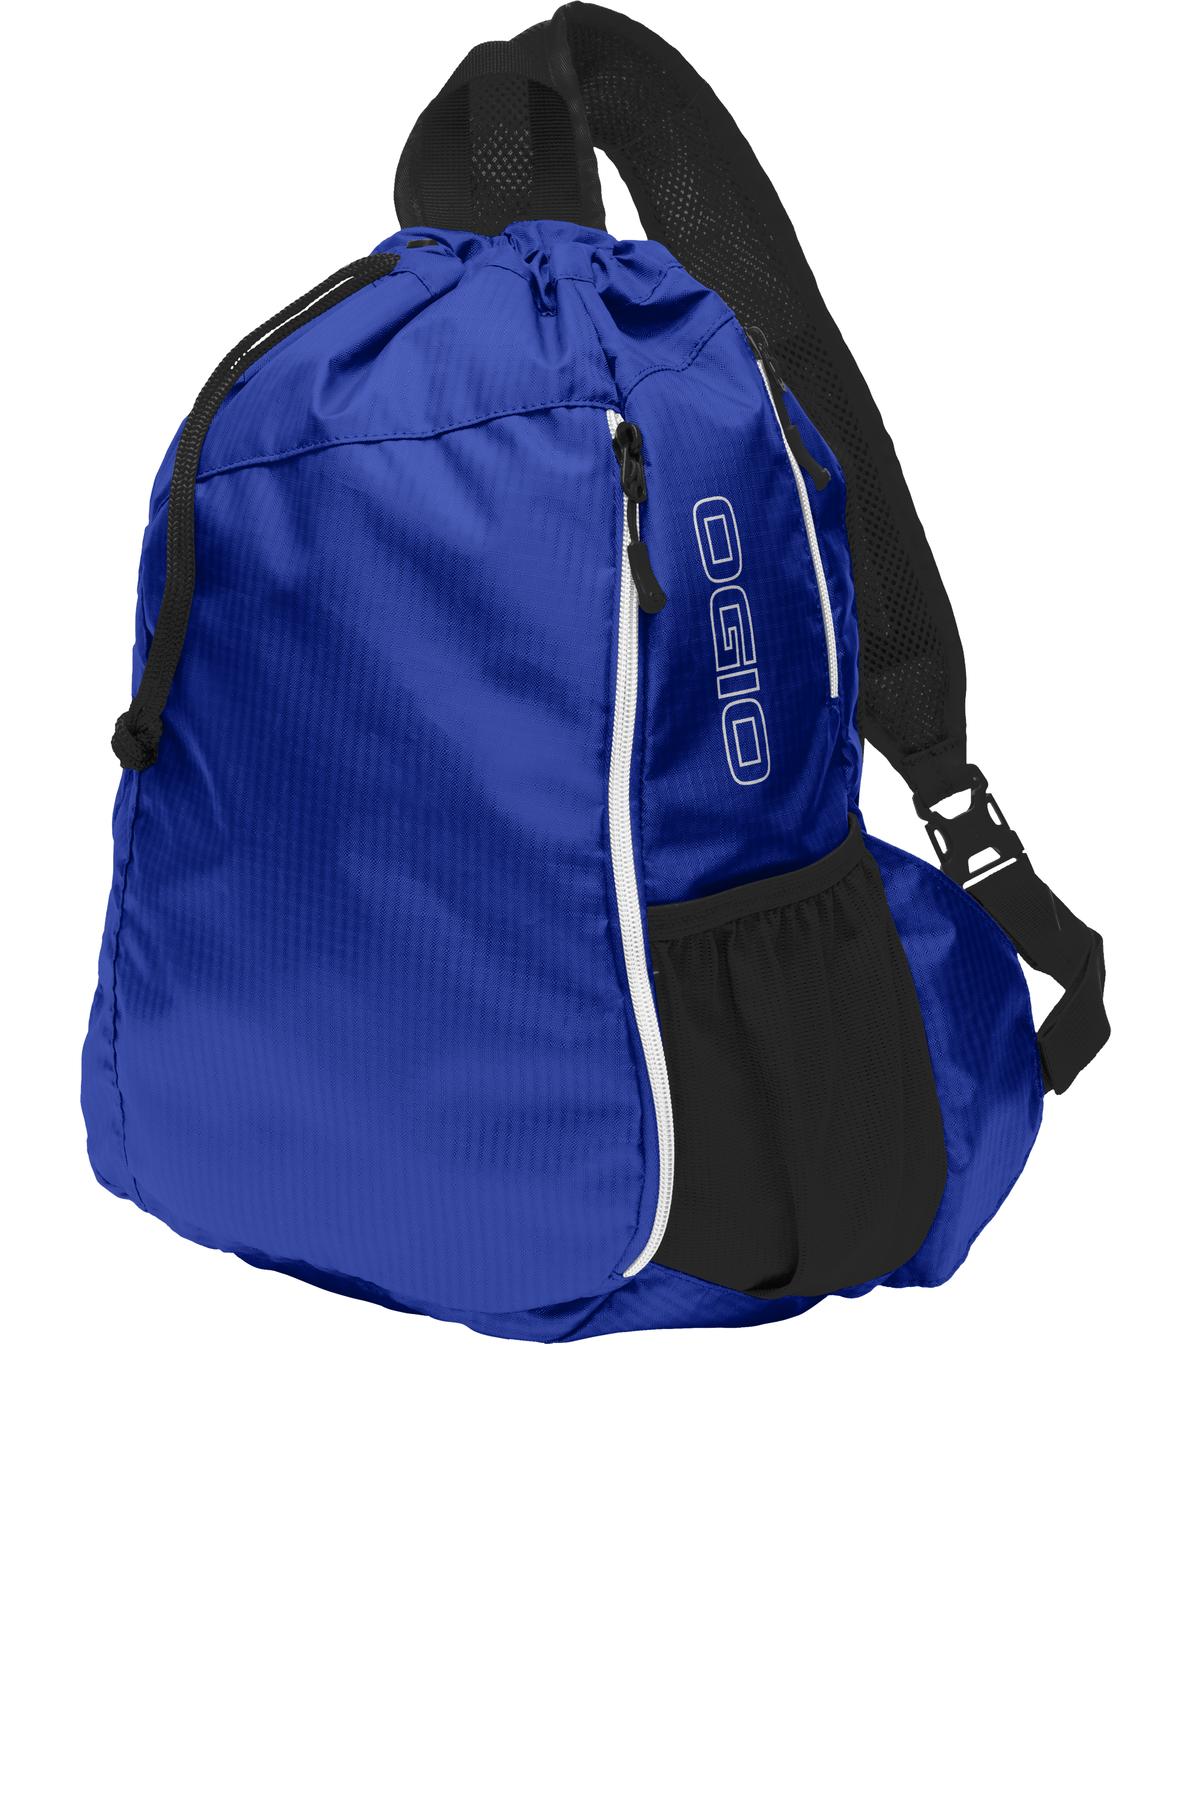 Bags Cobalt Blue/ Black OSFA OGIO